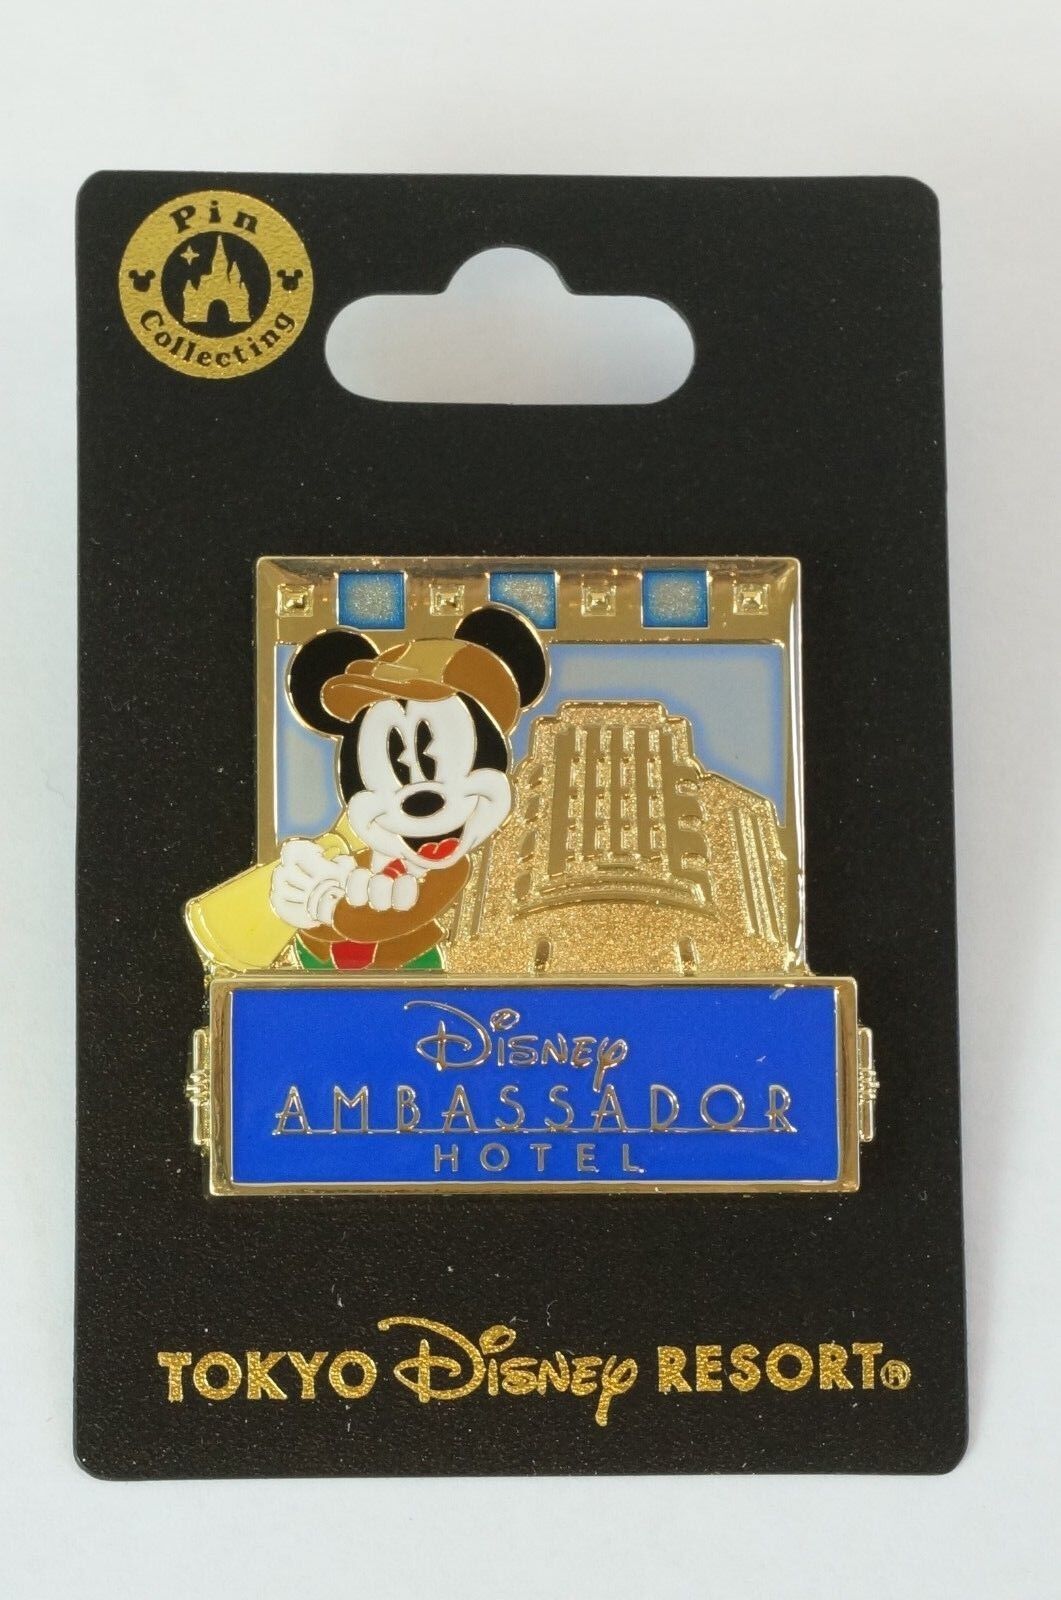 Tokyo Disney Resort Pin 2018 Disney Ambassador Hotel Mickey